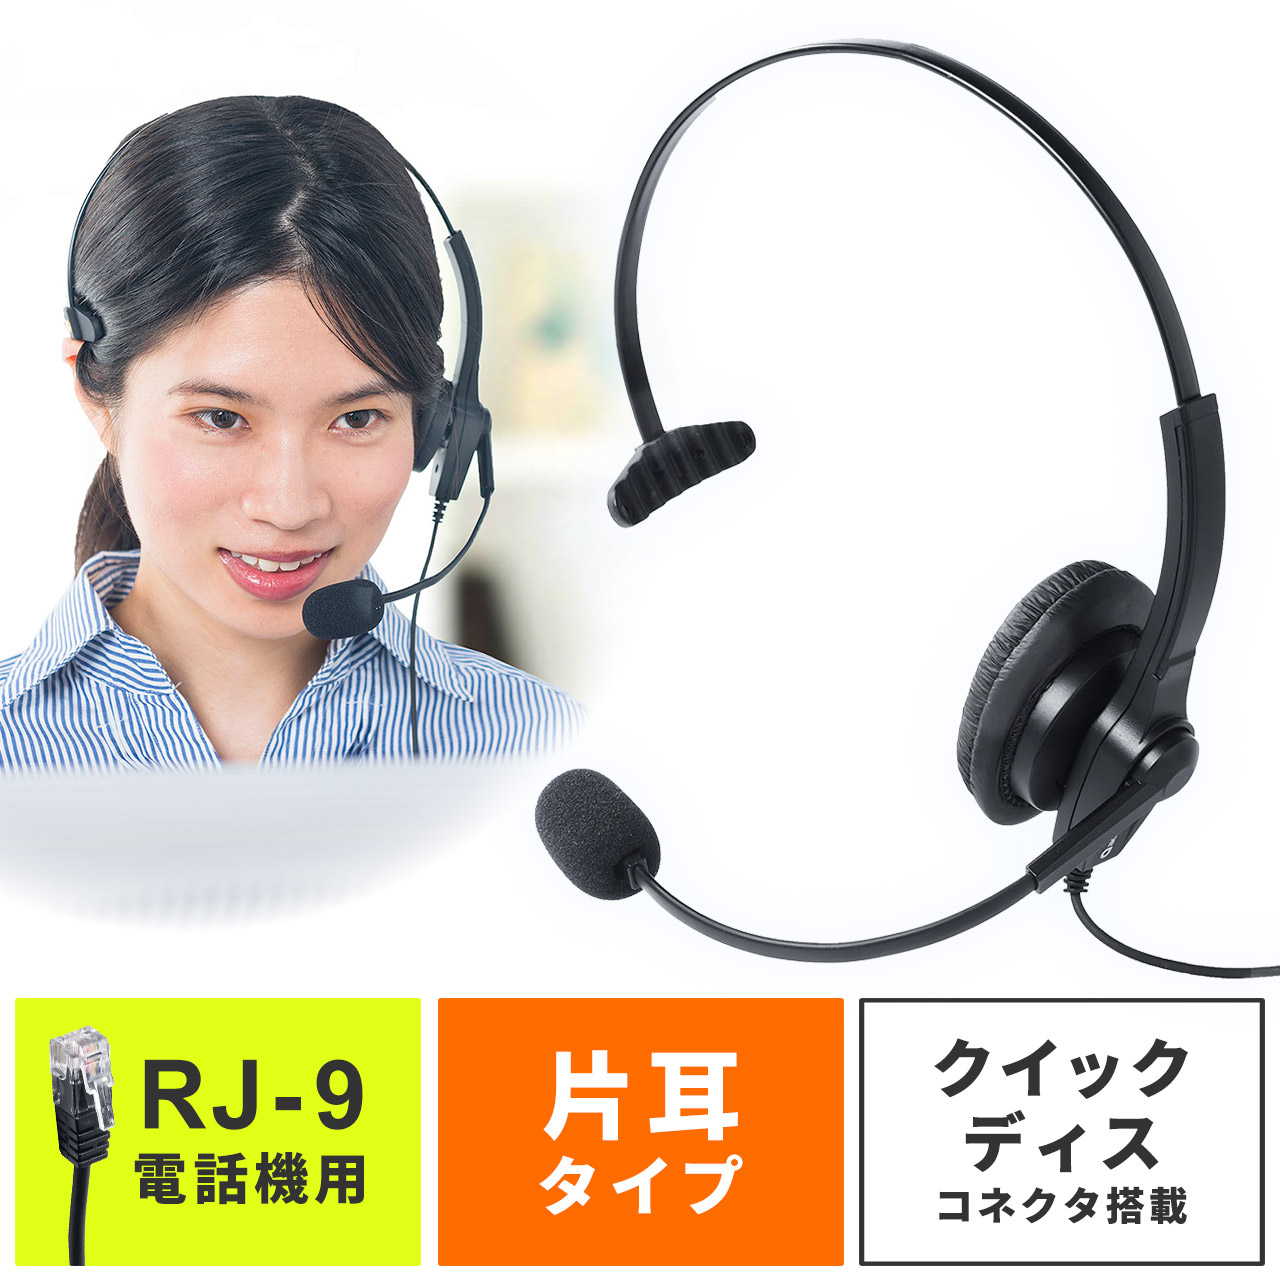 コールセンター用ヘッドセット 電話機 固定電話 Rj 9接続 片耳タイプ 業務用 400 Hs043 通販 サンワダイレクト